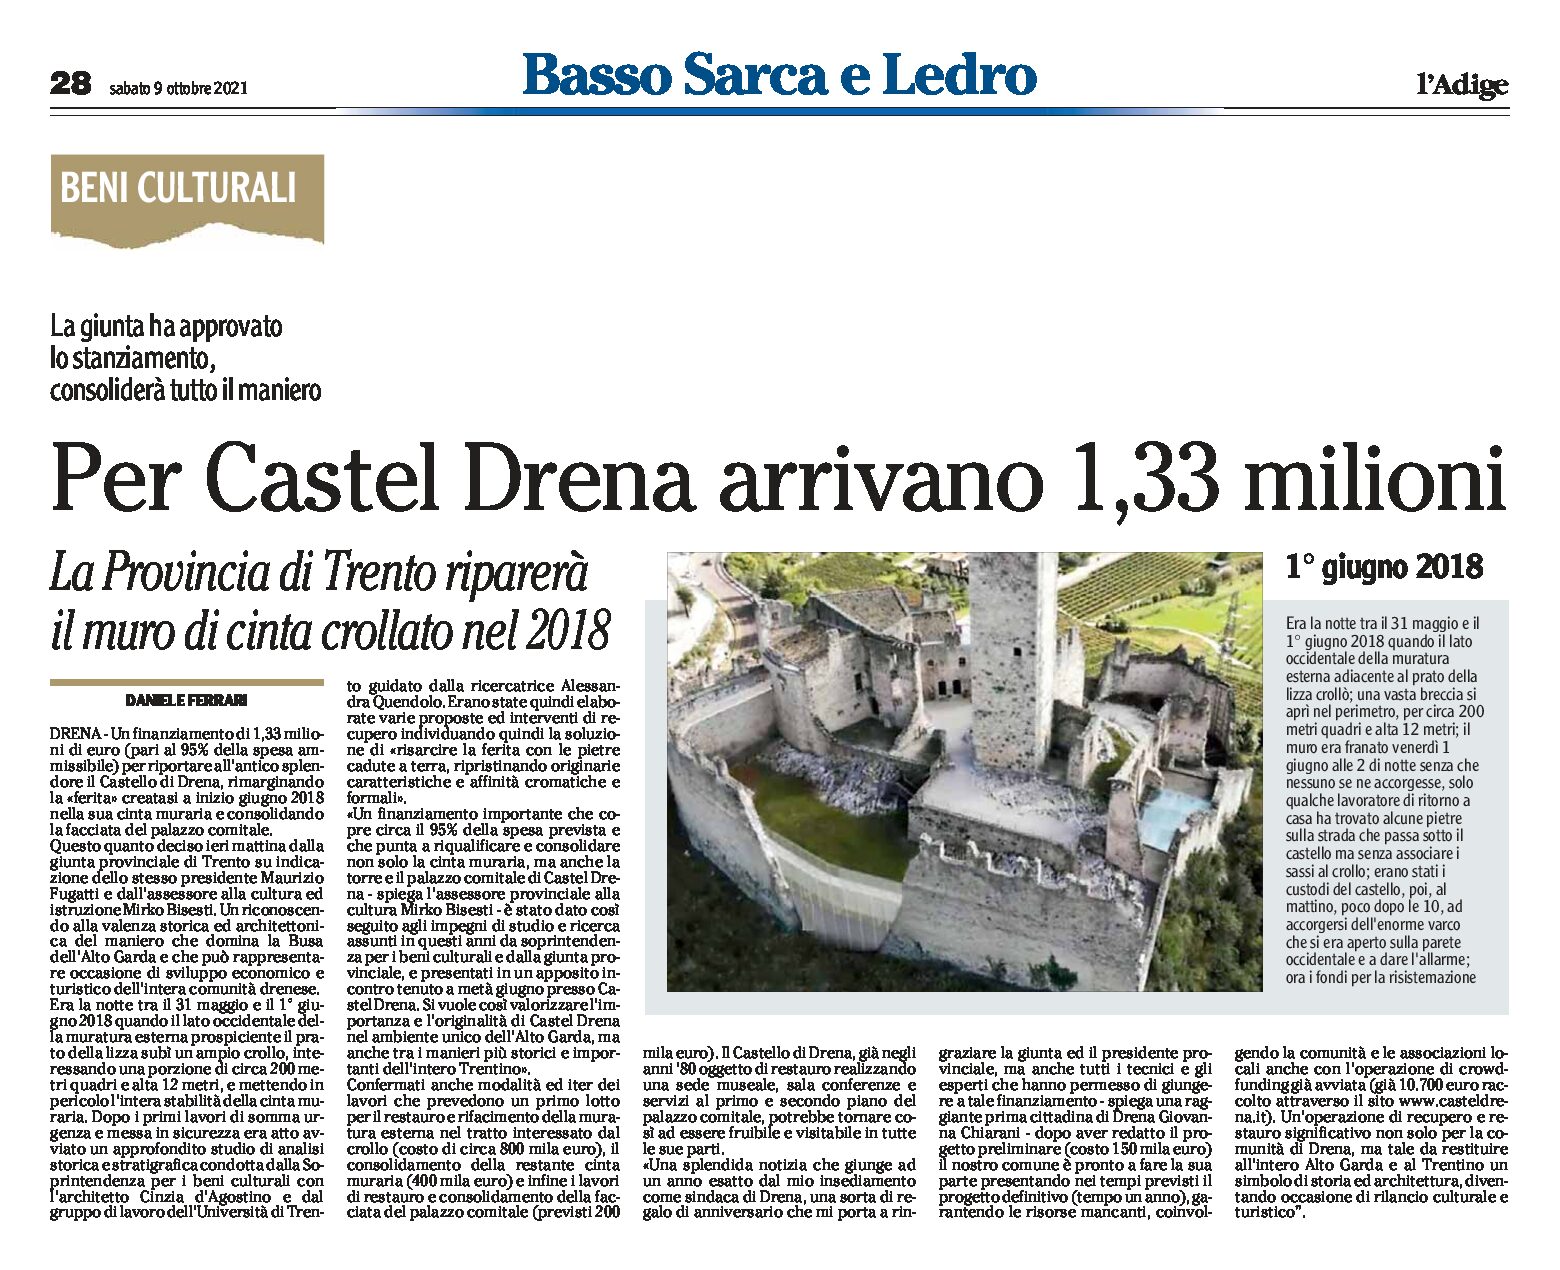 Castel Drena: arrivano 1,33 milioni per riparare il muro di cinta crollato